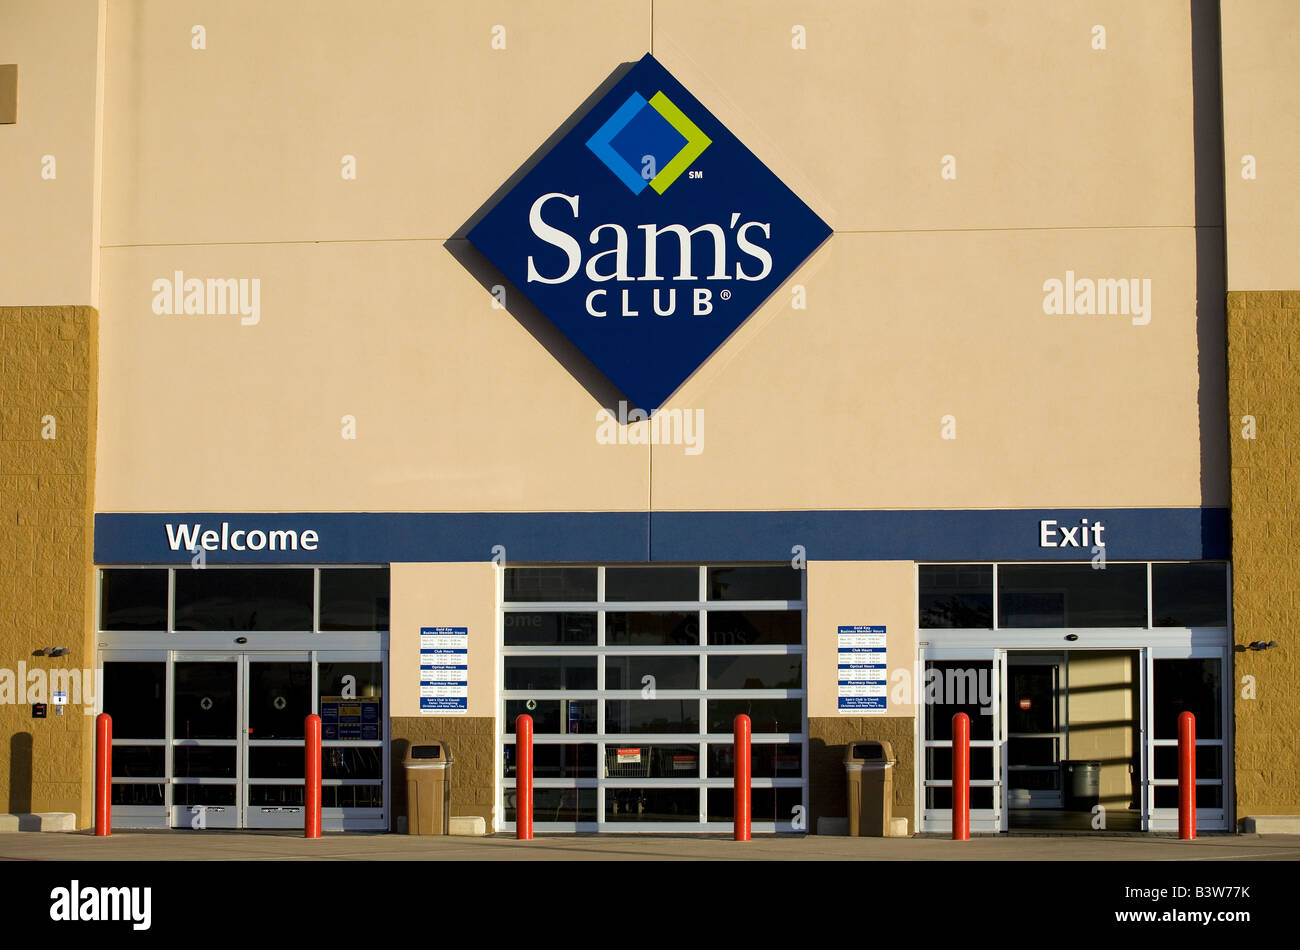 Entrada del club sams fotografías e imágenes de alta resolución - Alamy